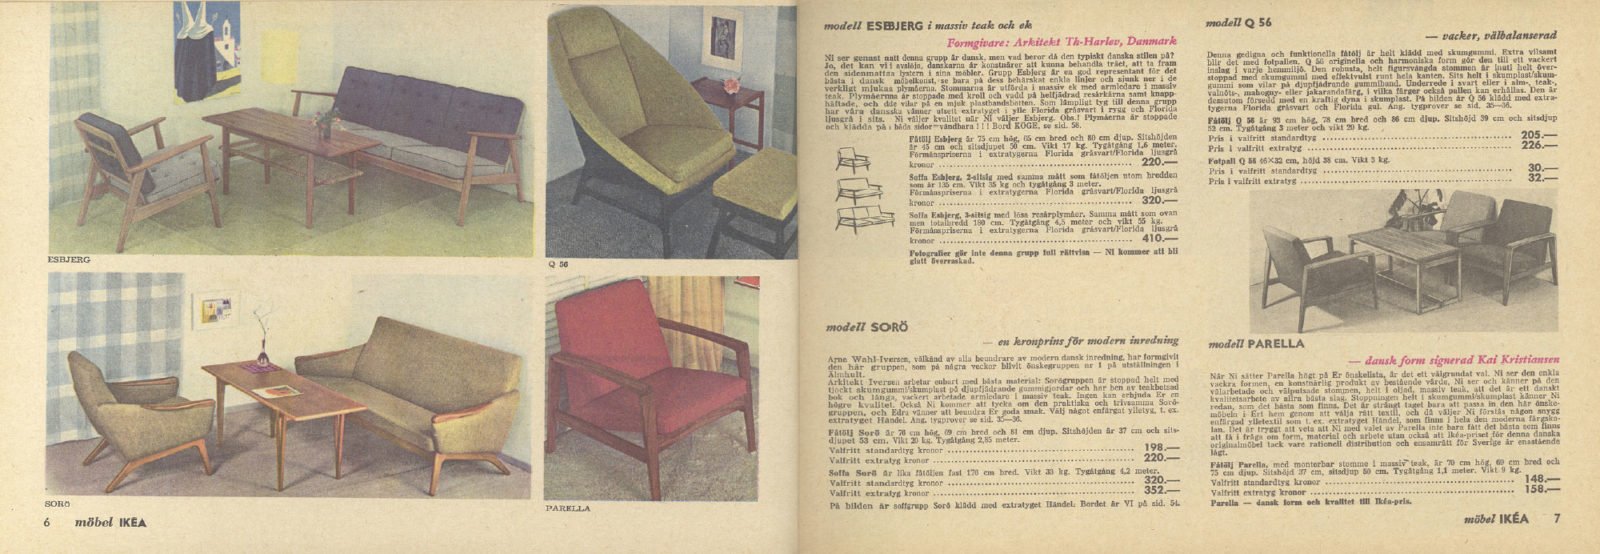 Uppslag i IKEA katalogen 1960 med foton av enkla rumsinteriörer och, till höger, beskrivningar av möbler.